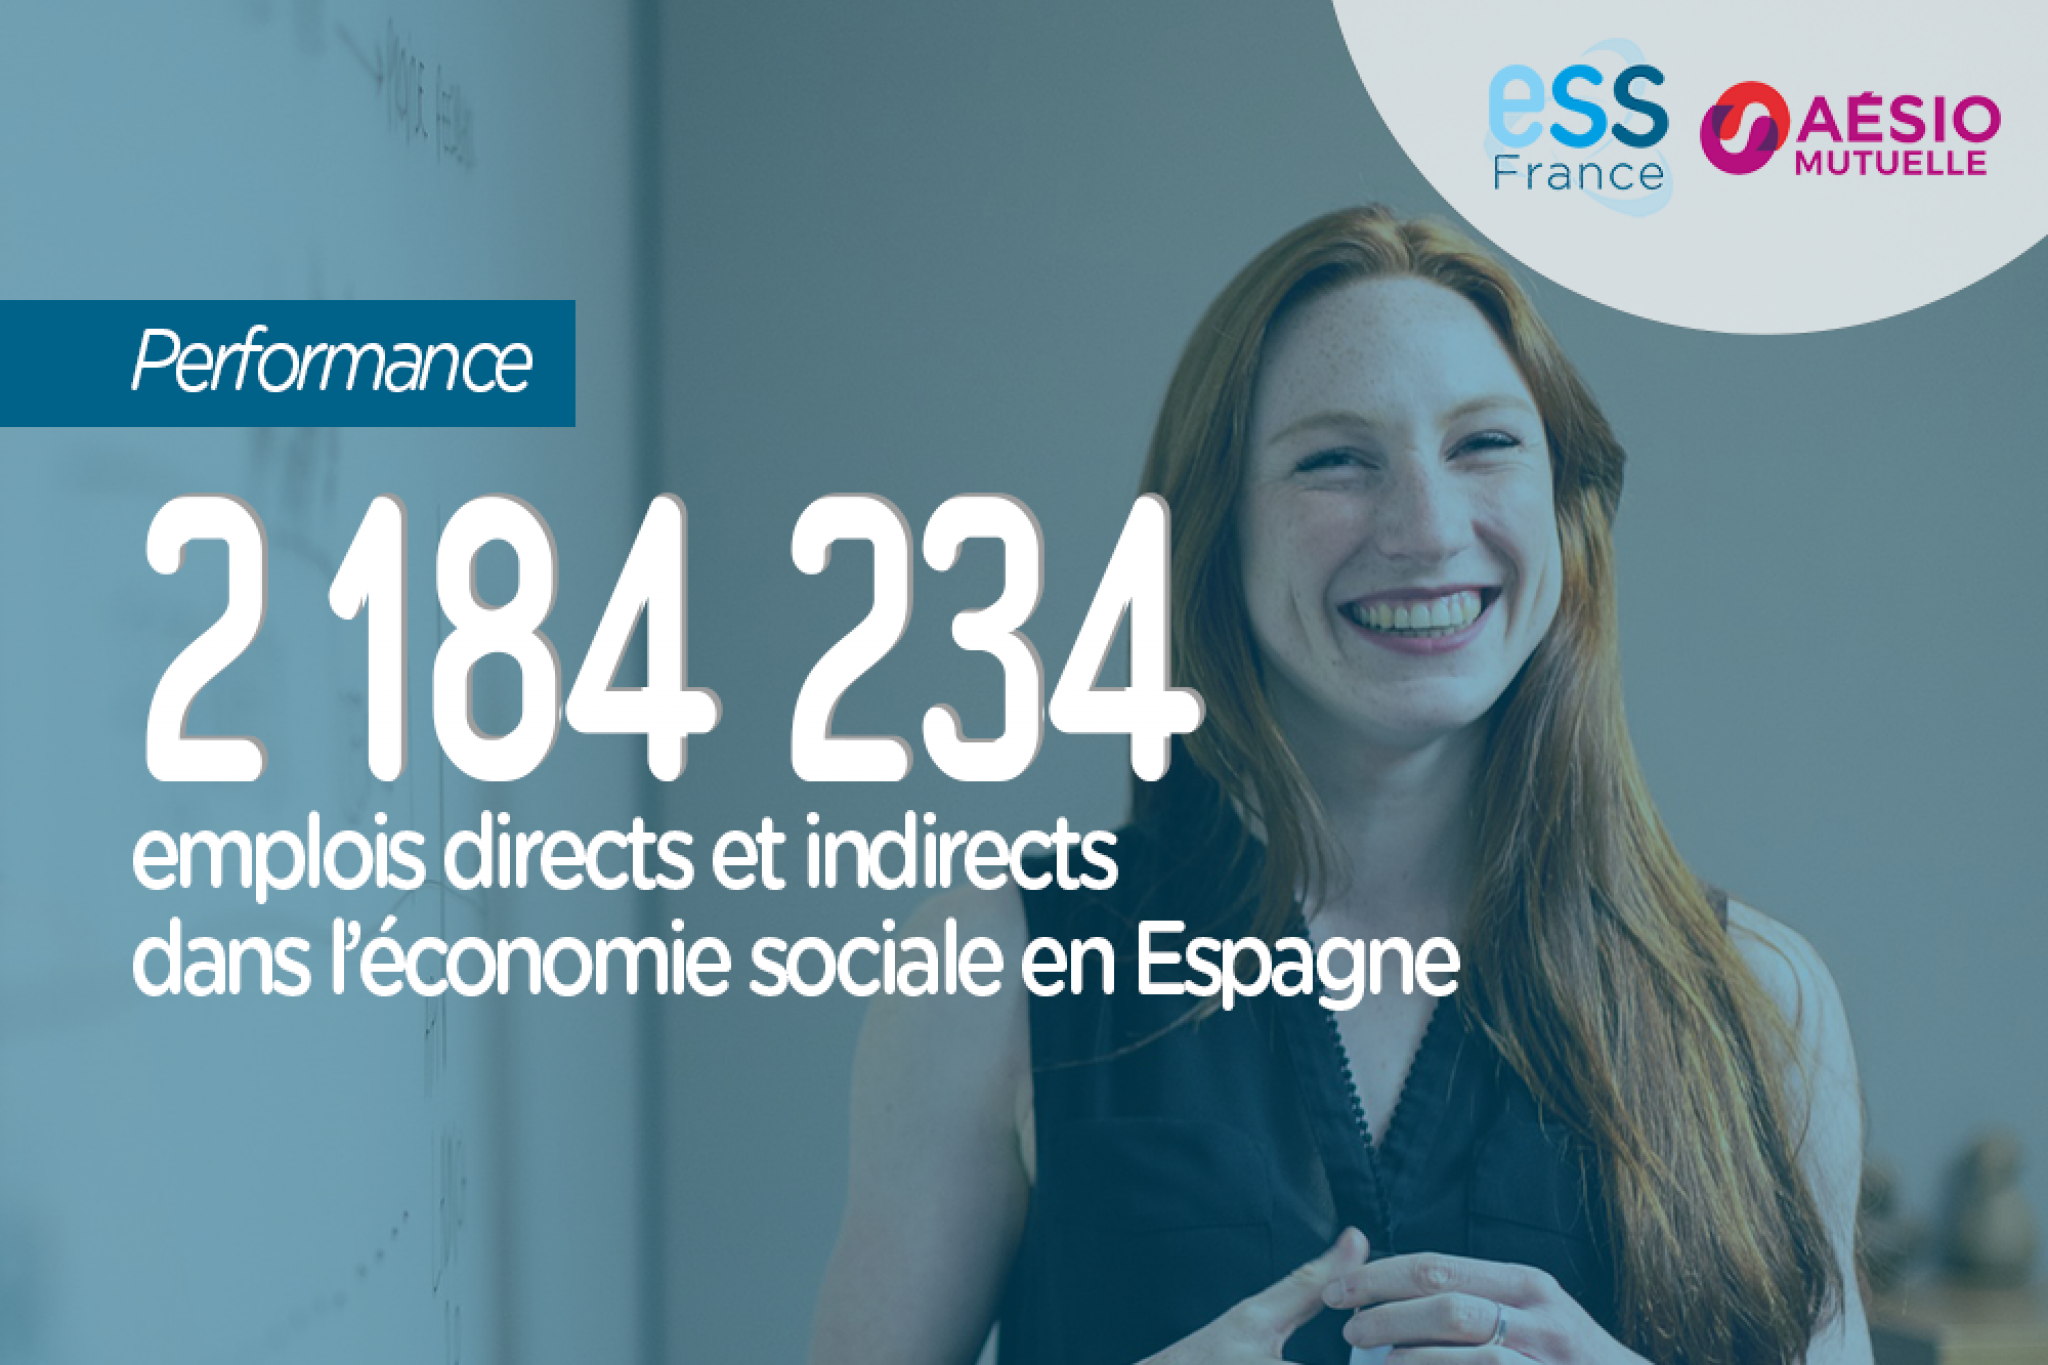 2 184 234 emplois directs et indirects dans l'économie sociale en Espagne